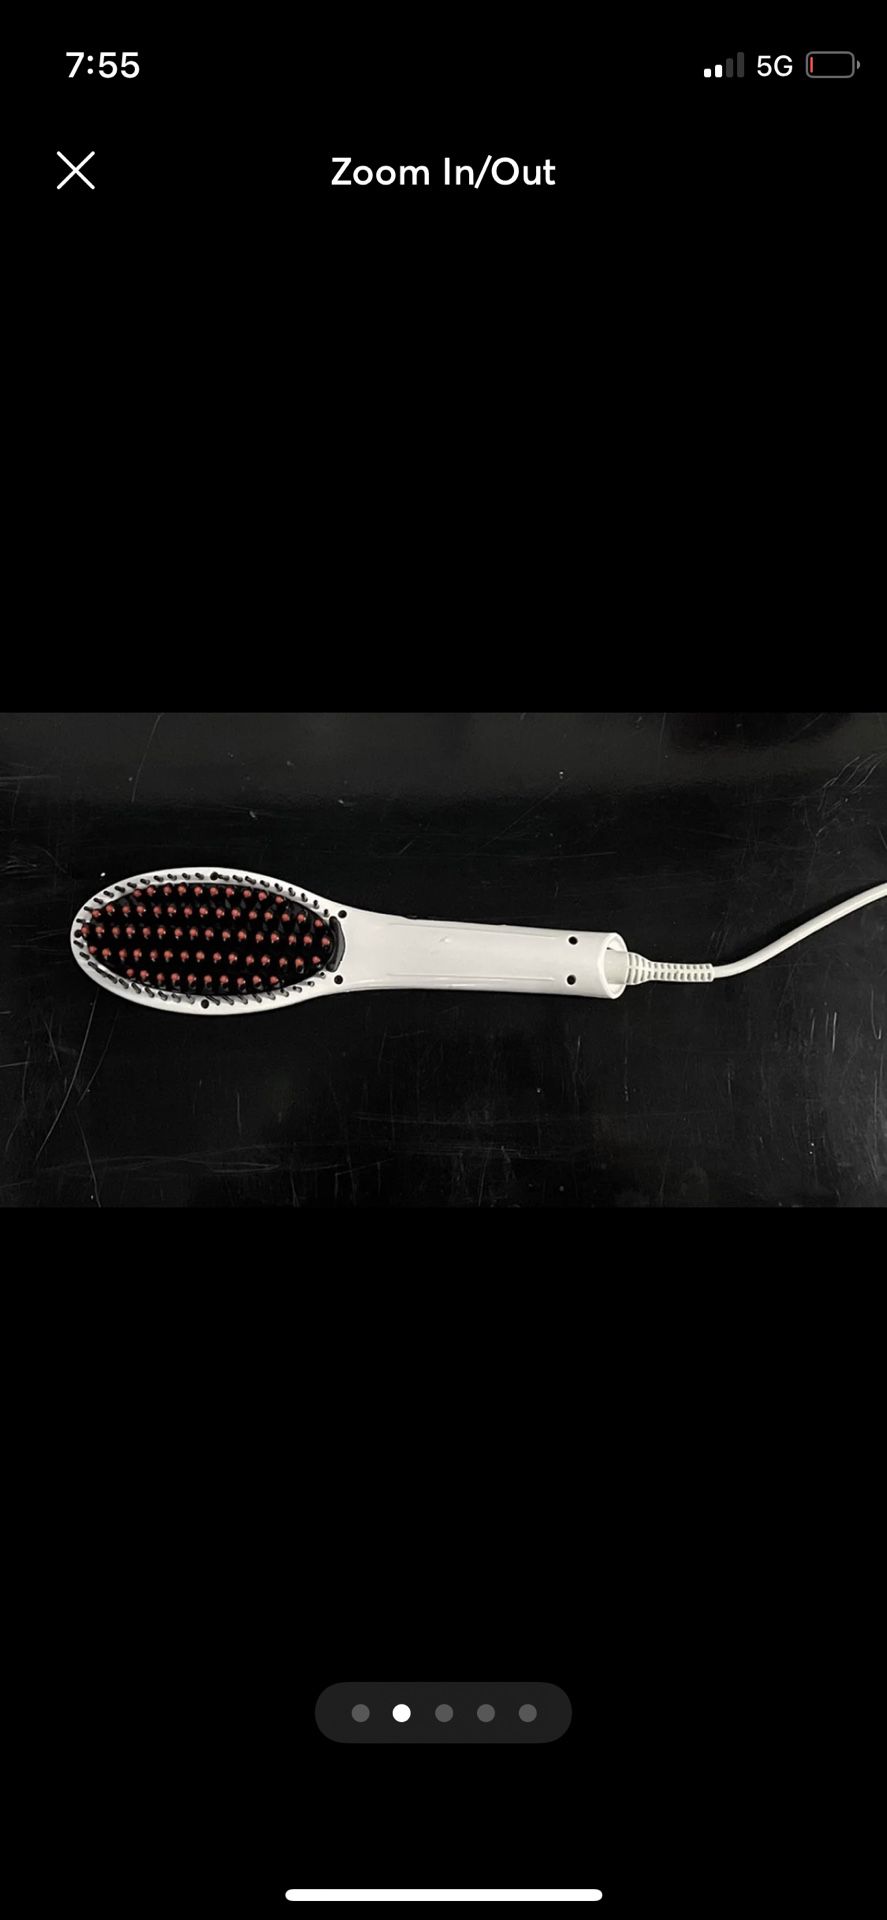 LCD Display Hair Straightener Comb Brush Iron(White)